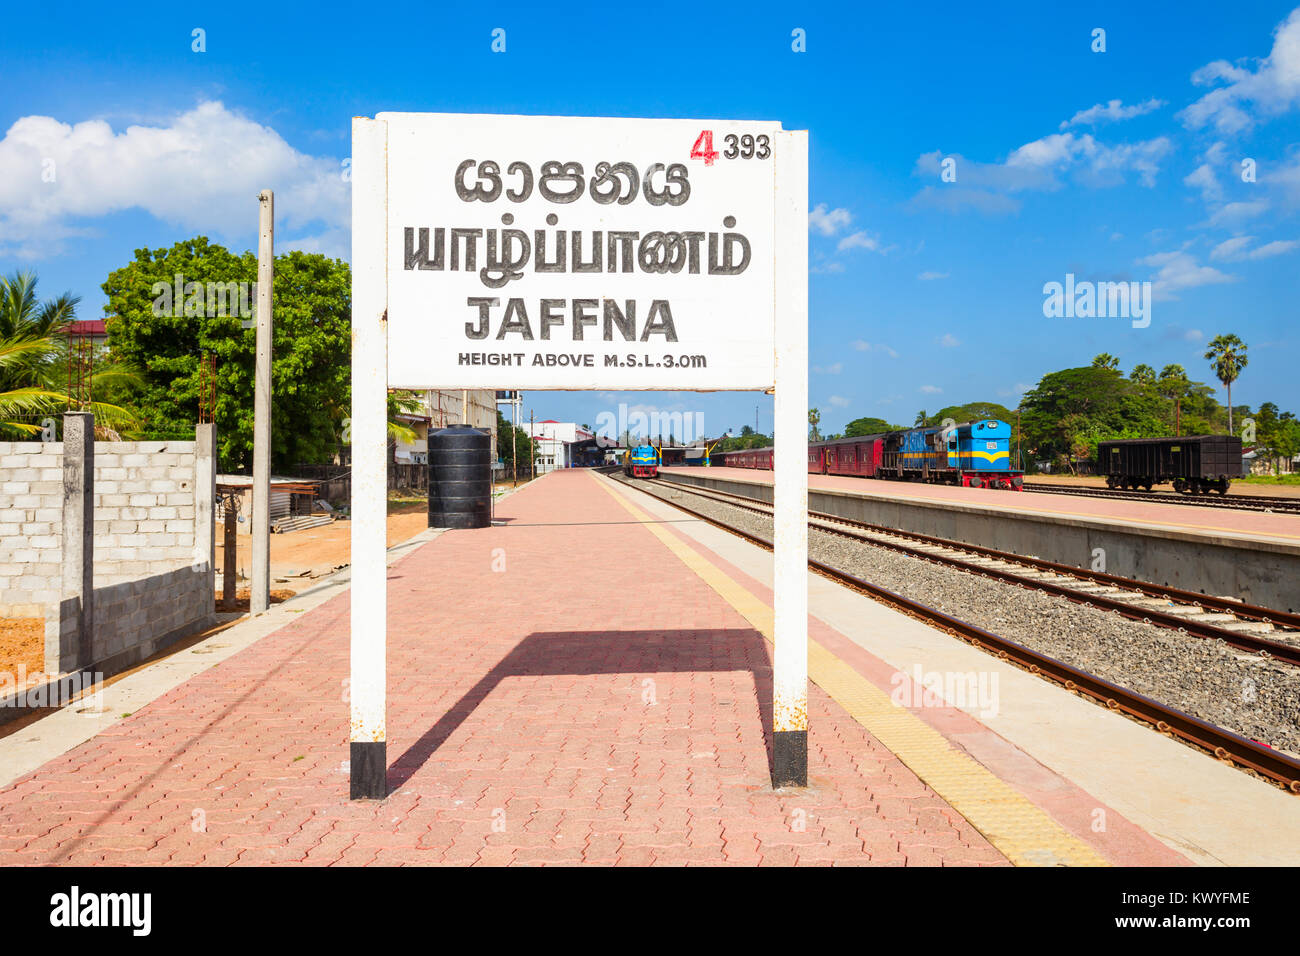 La gare de Jaffna est une gare ferroviaire à Jaffna, dans le nord du Sri Lanka. La gare de Jaffna est l'un des plus fréquentés du pays. Banque D'Images